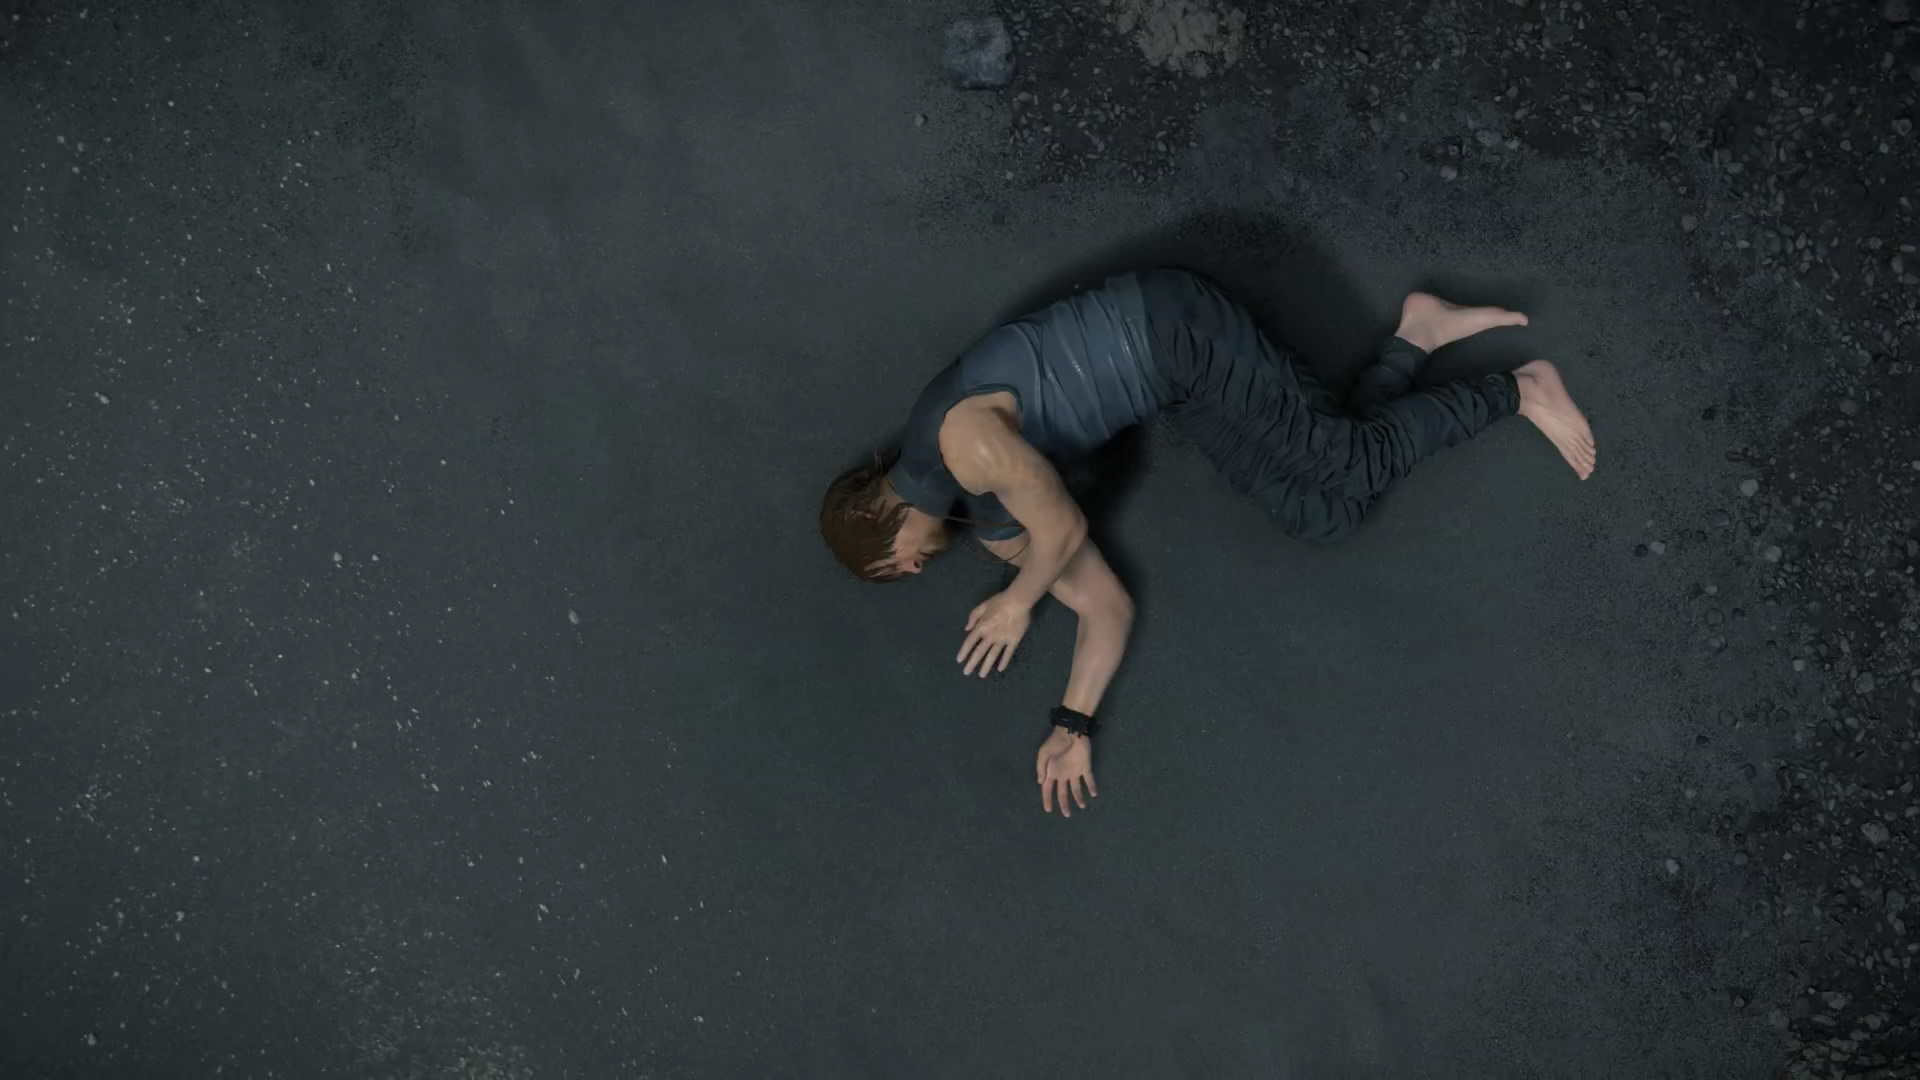 《死亡擱淺》“冥灘”宣傳片欣賞 孤獨絕望抓狂